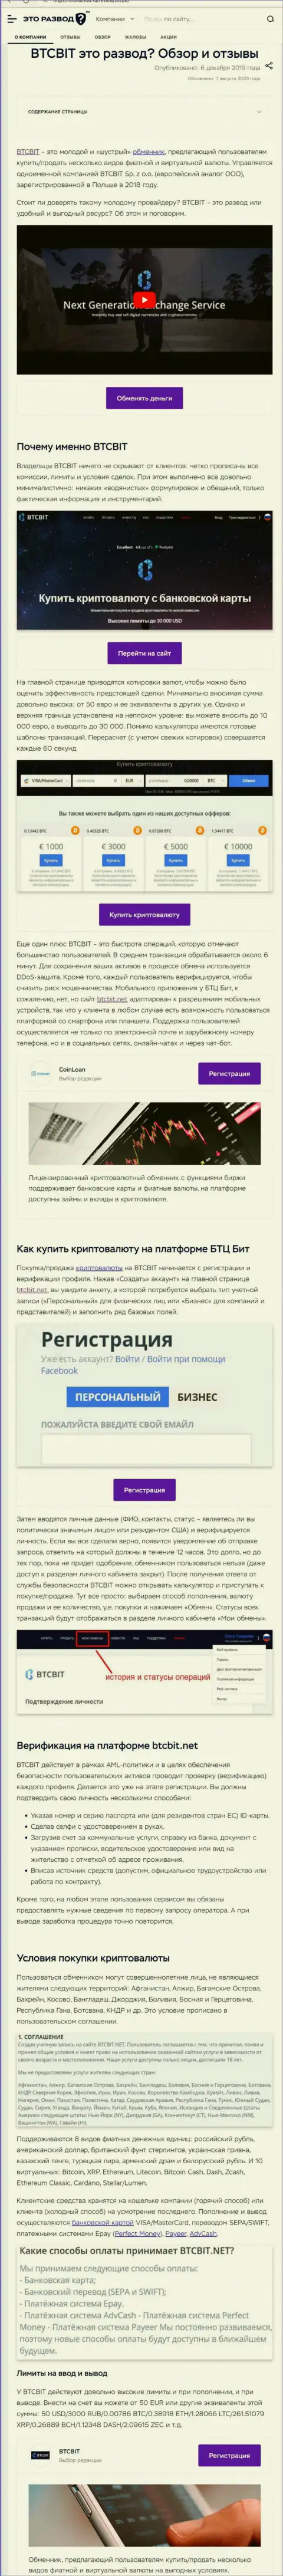 Статья с информационным обзором онлайн обменки БТКБит на информационном портале etorazvod ru